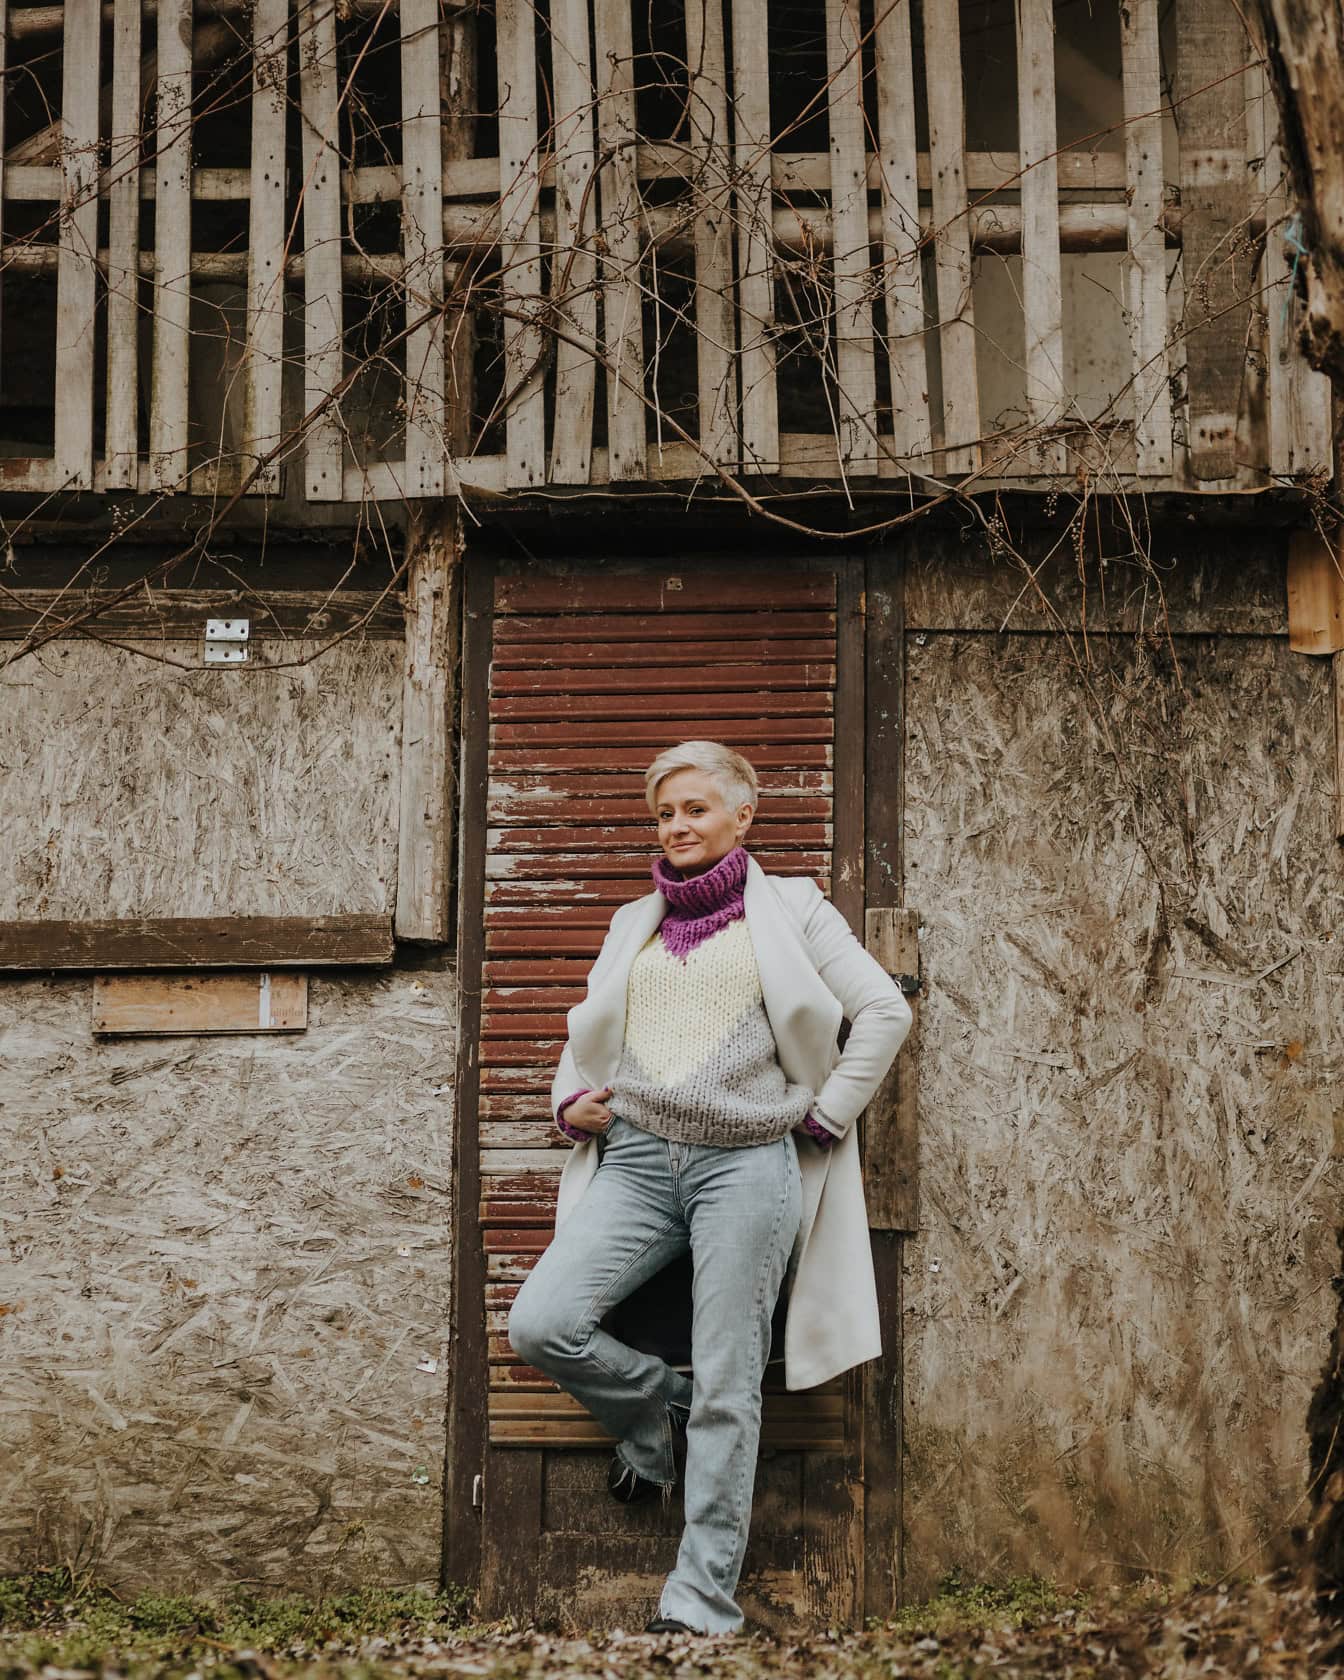 En kvinne poserer i bukser, håndstrikkegenser og hvit frakk lent mot døren til et gammelt skur